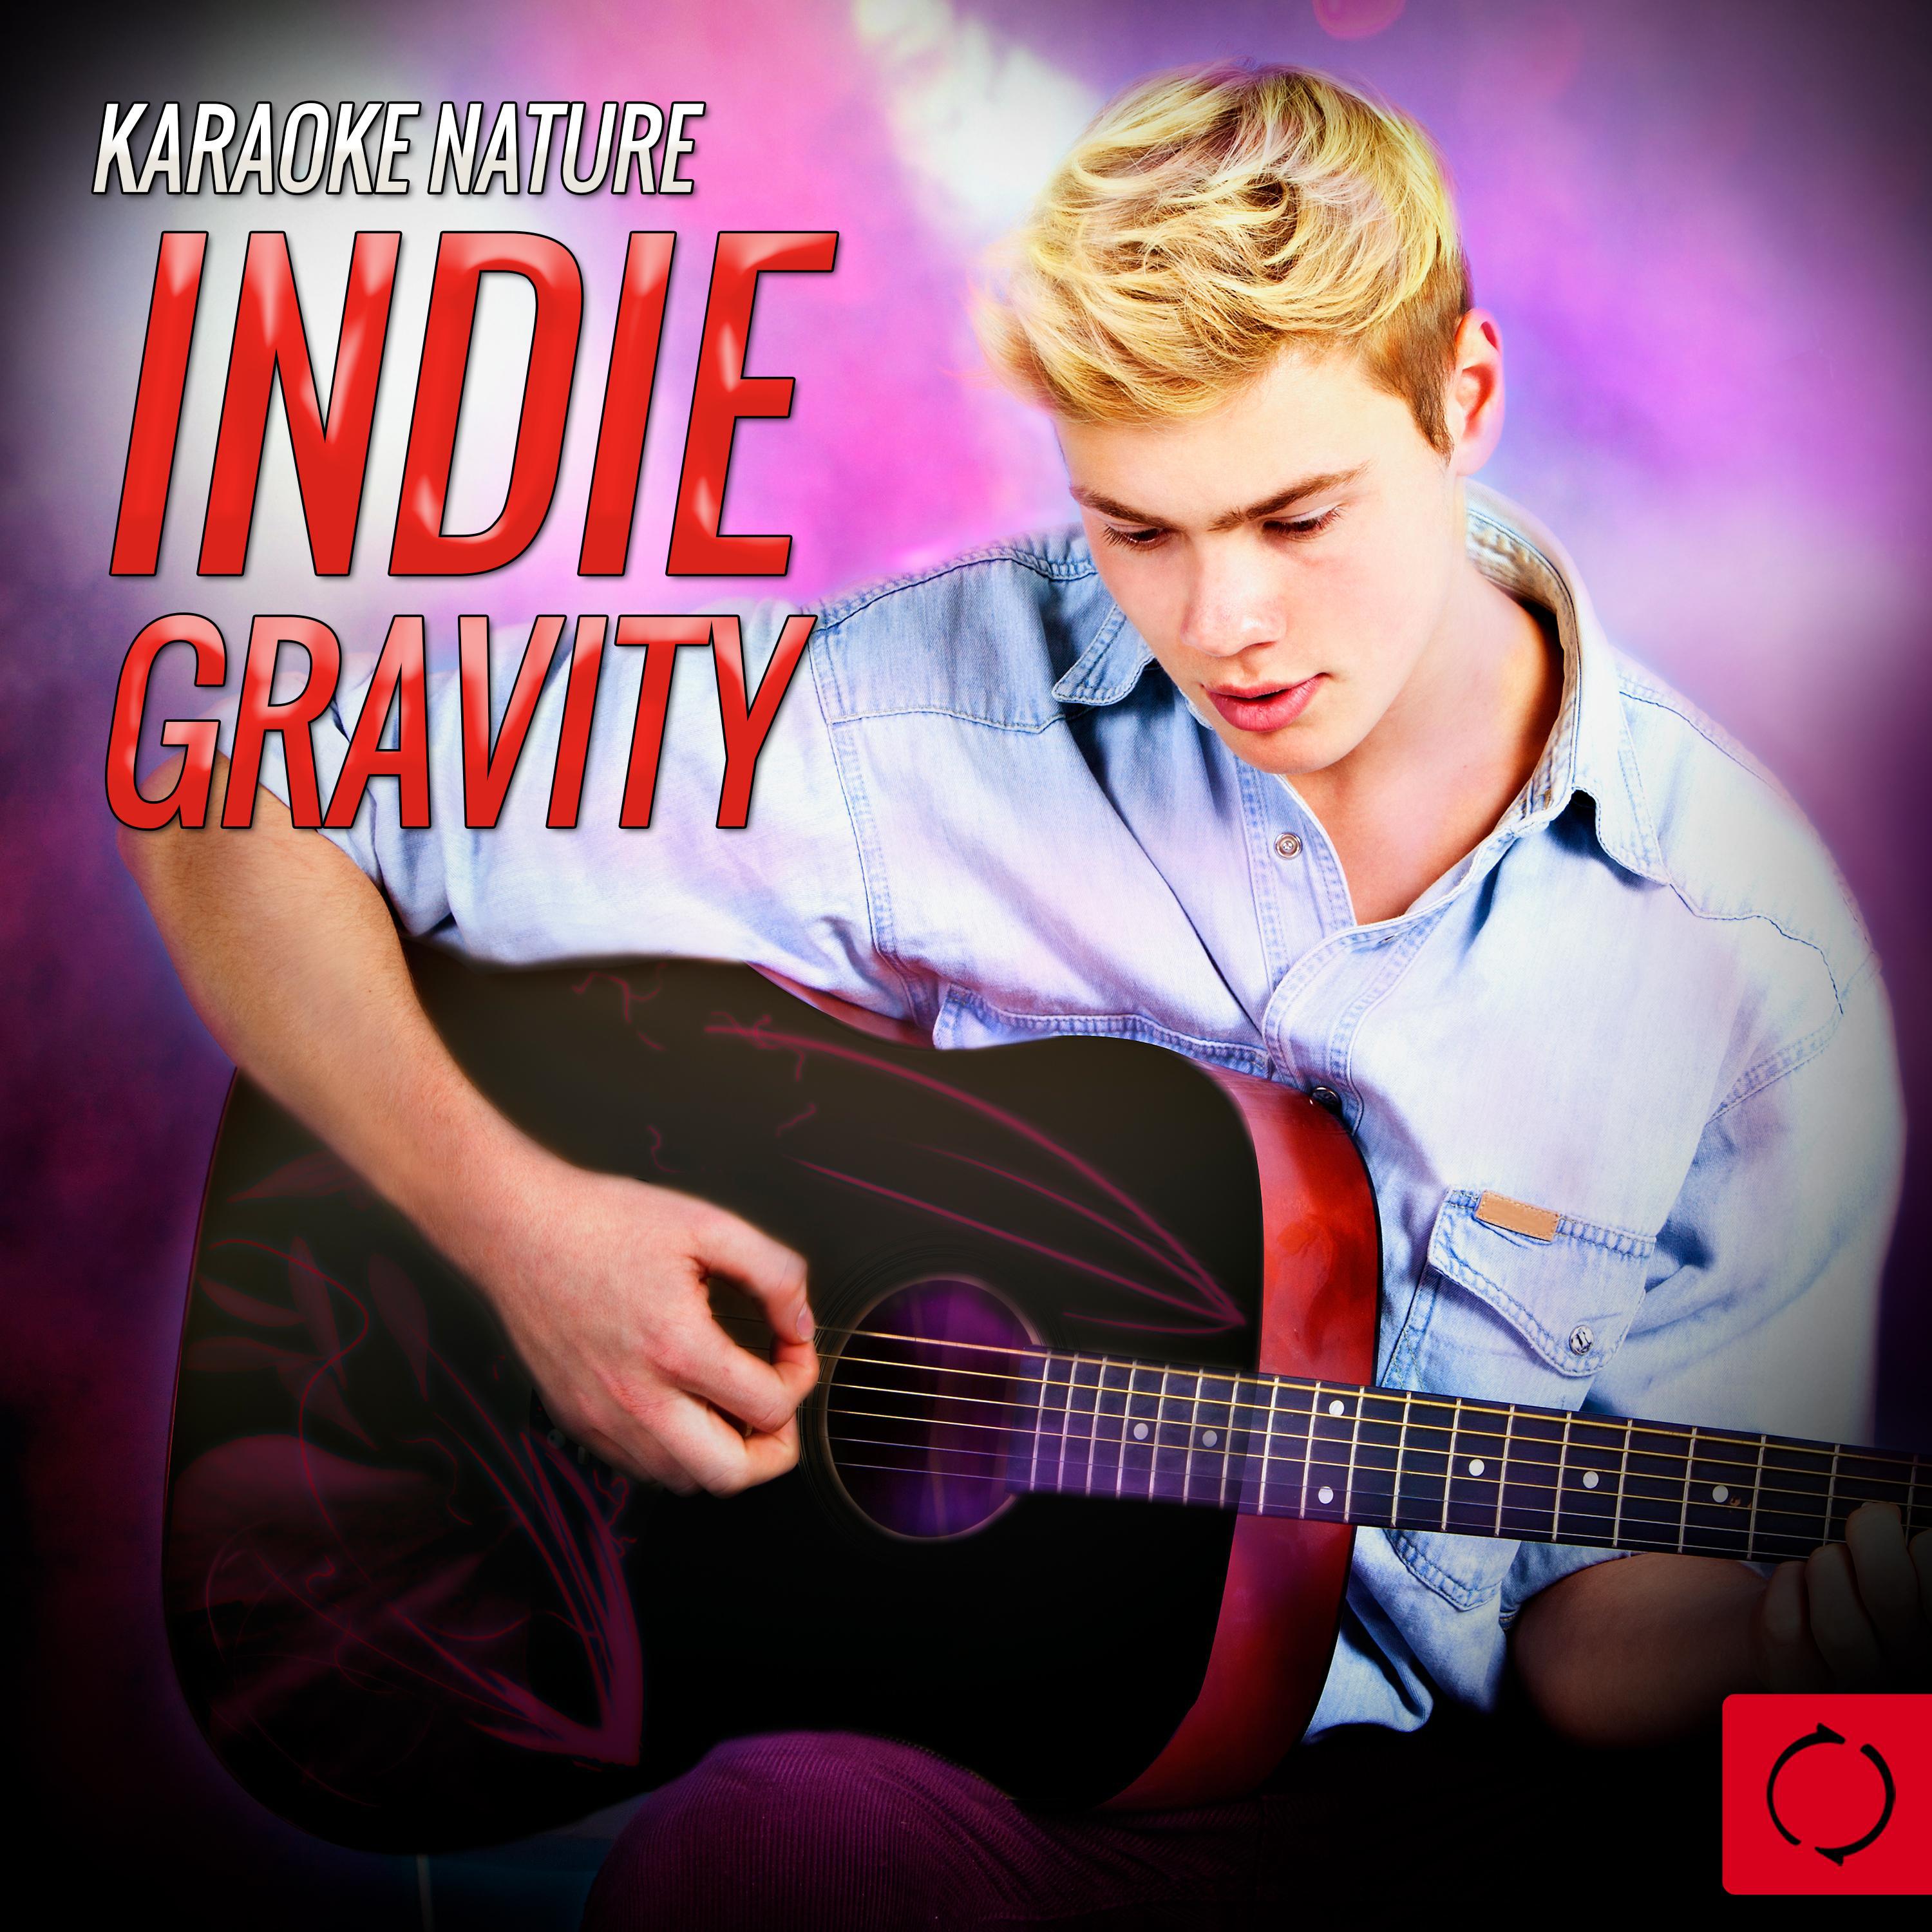 Karaoke Nature: Indie Gravity